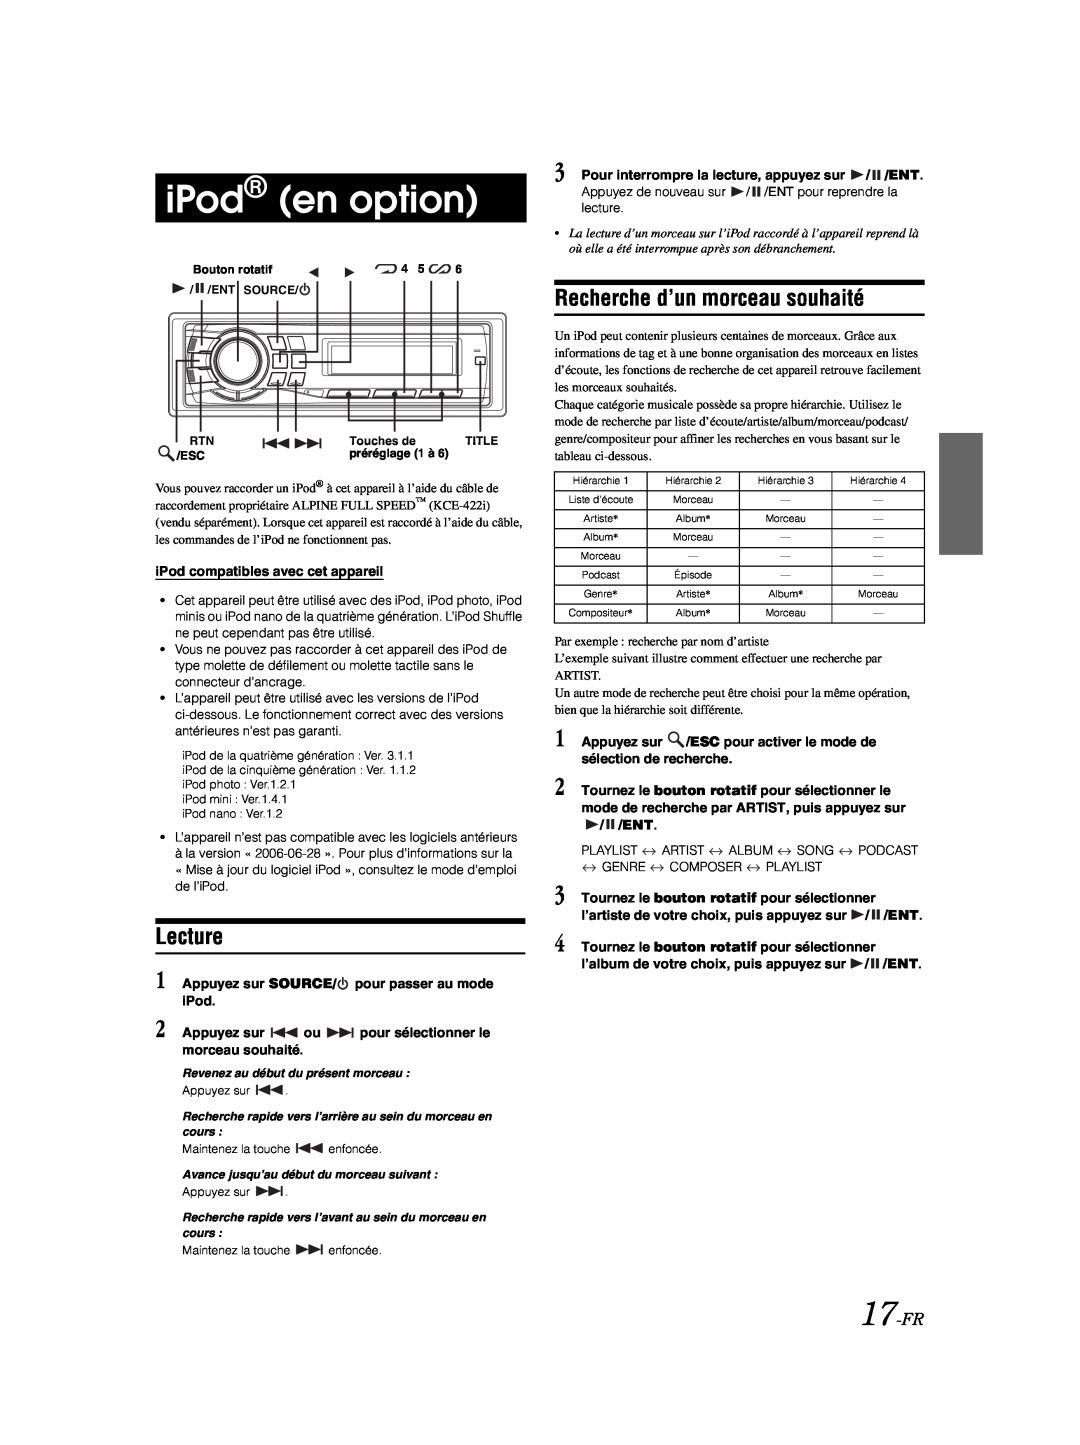 Alpine CDE-9881 owner manual iPod en option, Recherche d’un morceau souhaité, 17-FR, Lecture 